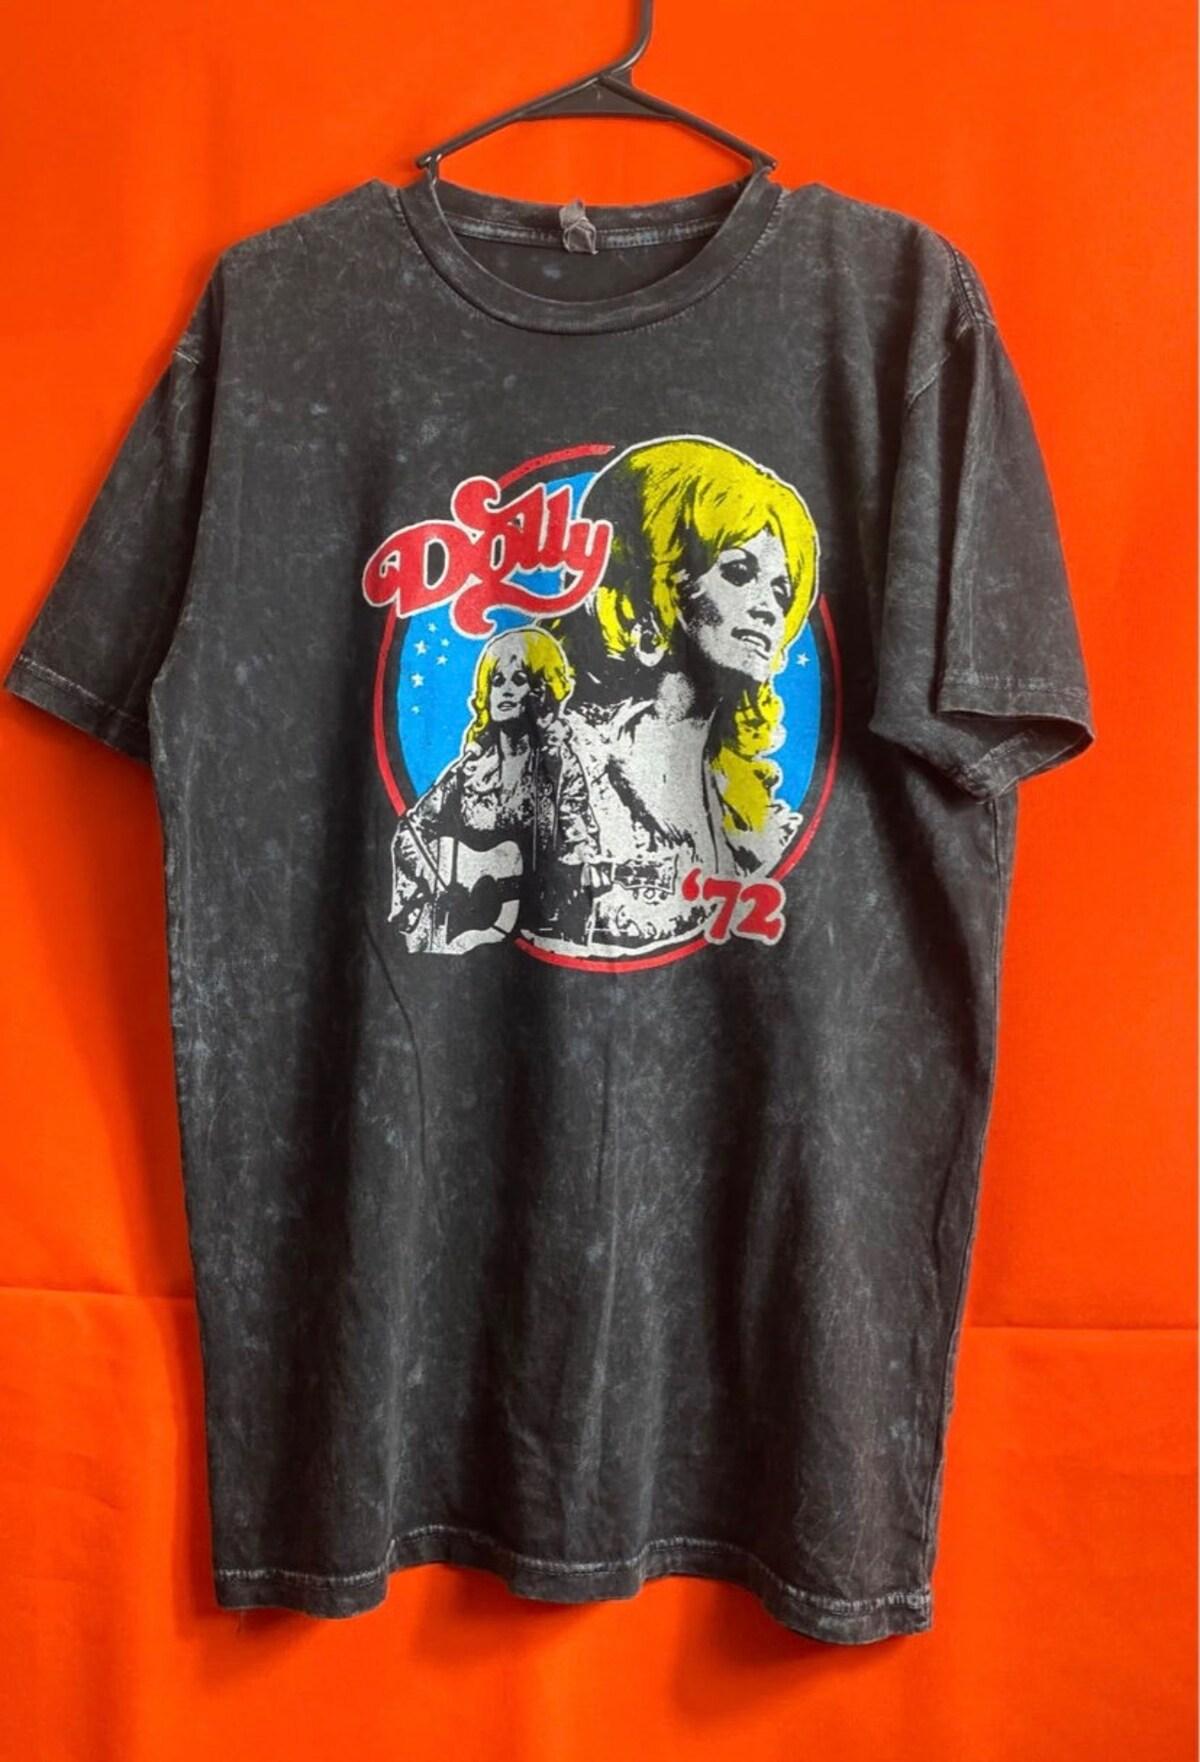 Actor Paul Rudd Vintage Unisex T-shirt Best Fan Gifts